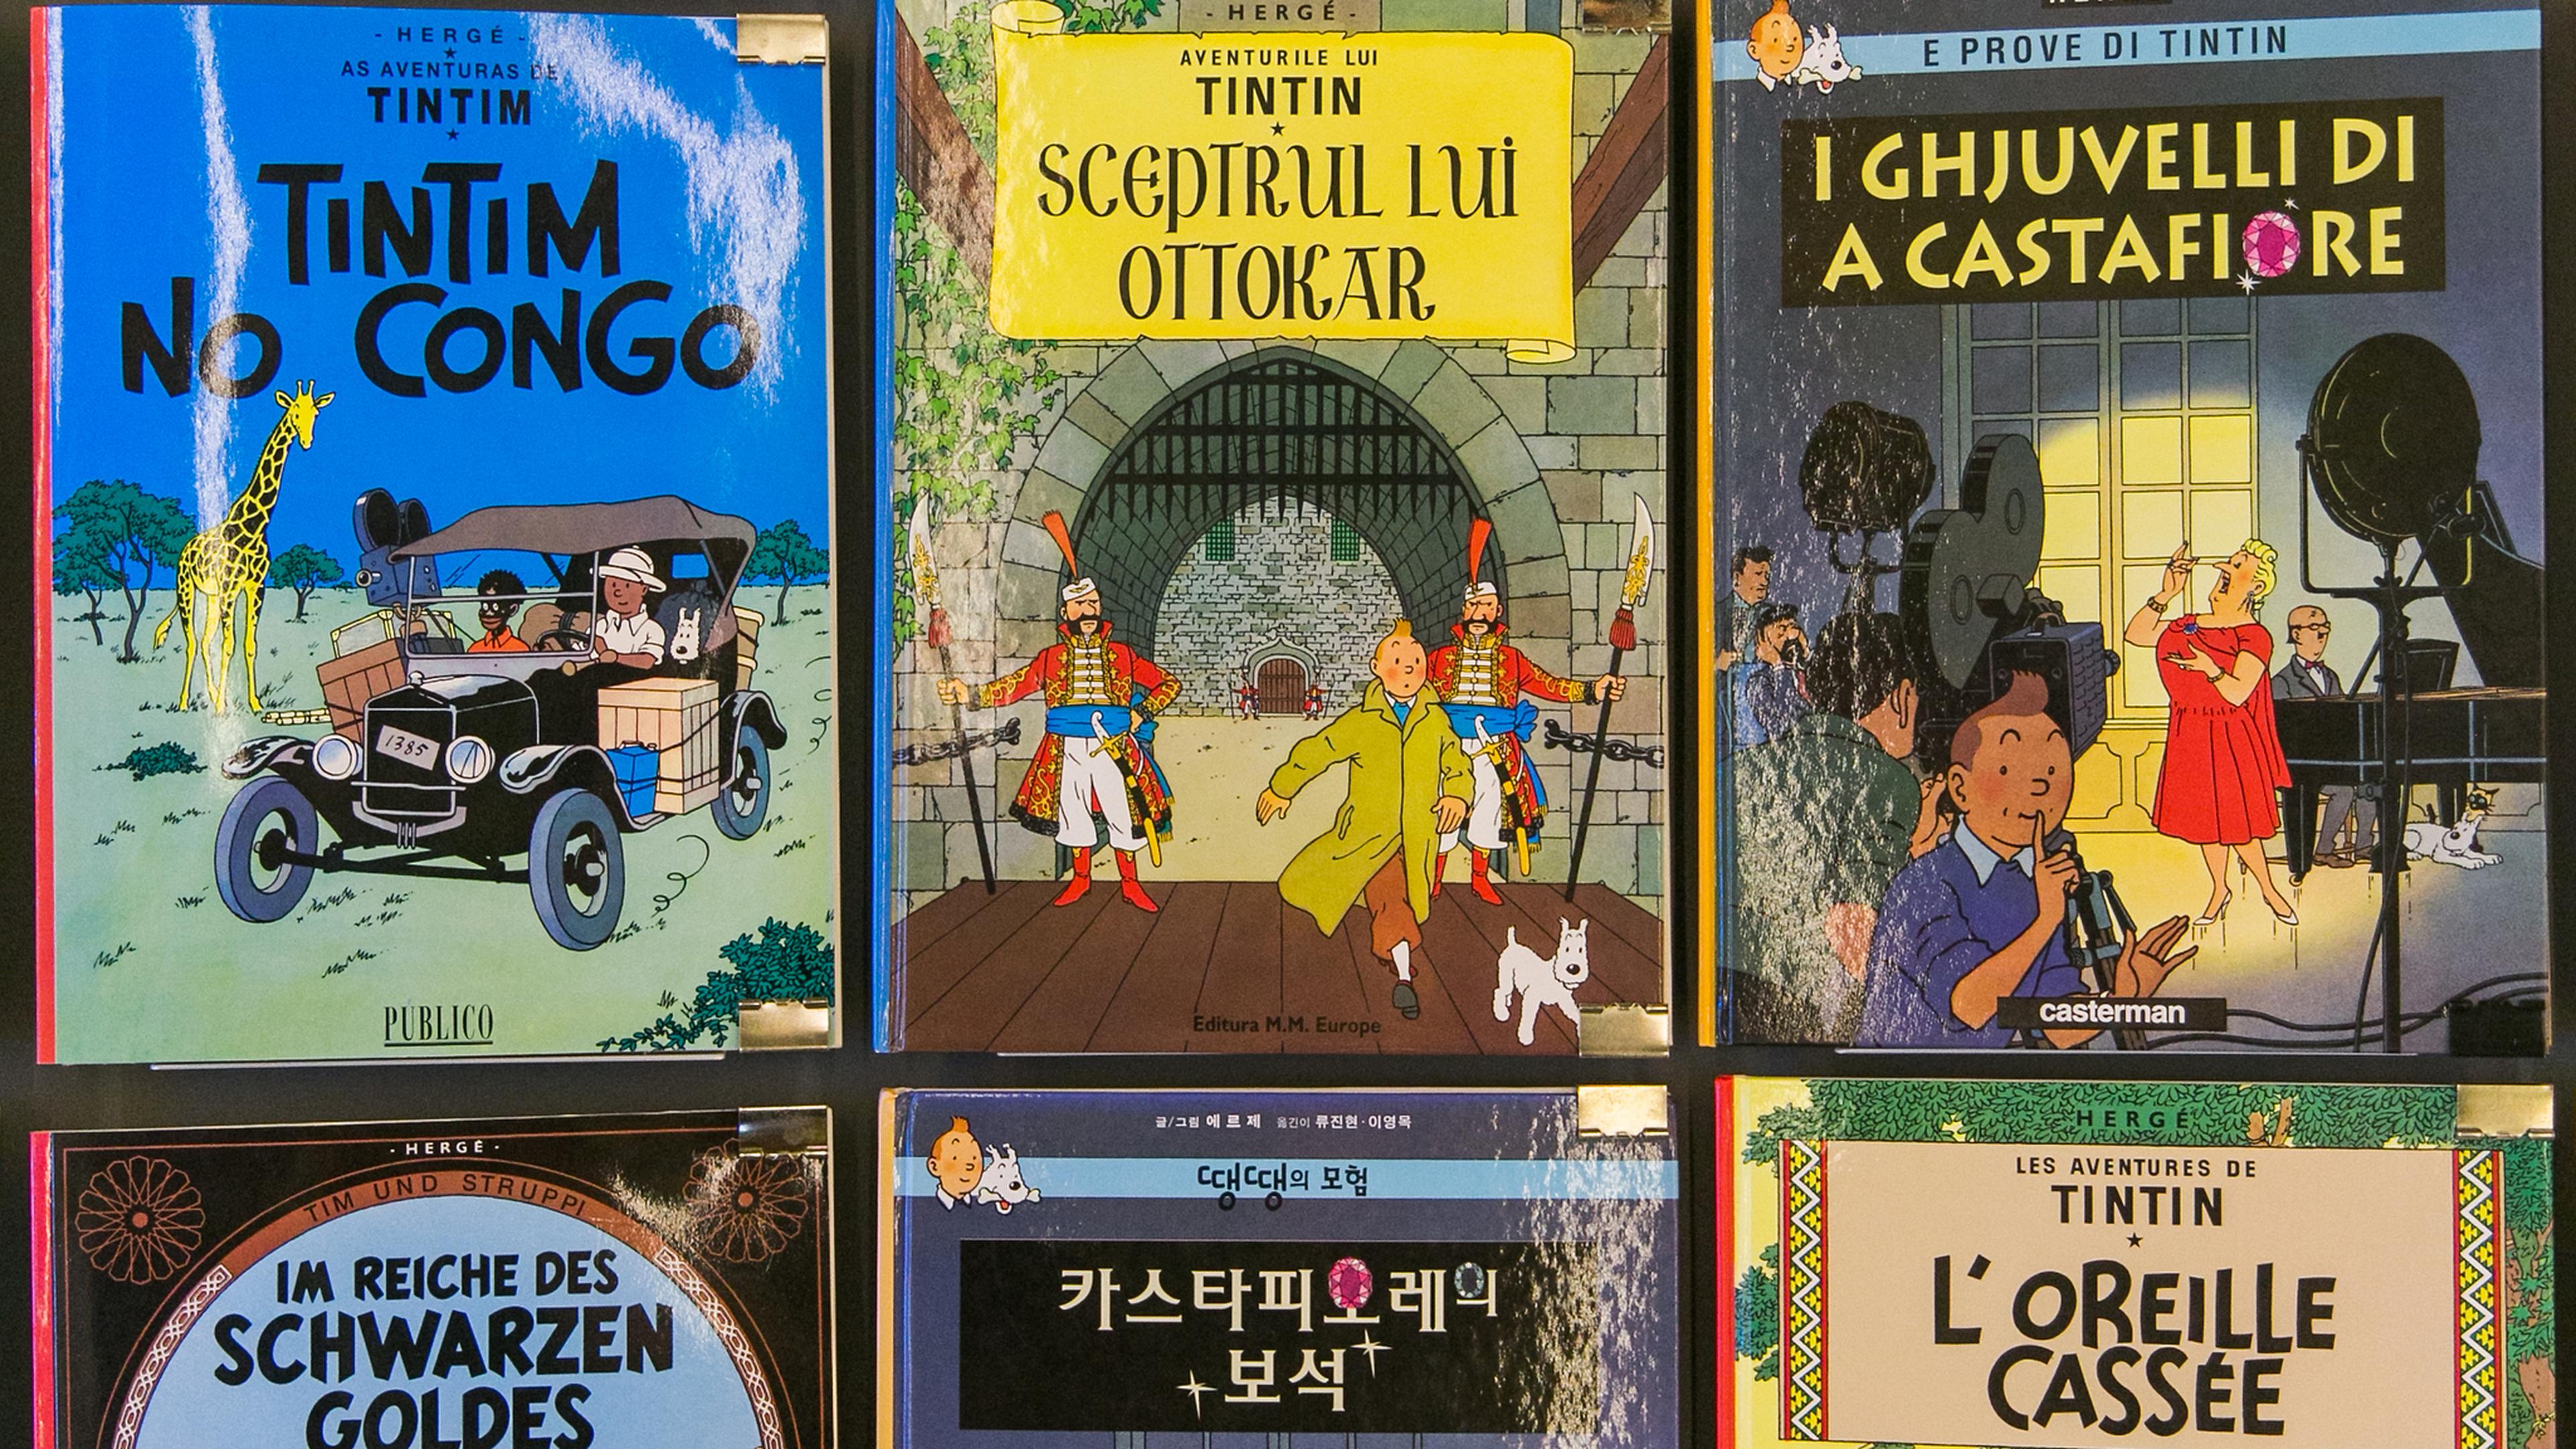 Tintin - Divers -GéoHS 2023- Tintin - C'est l'aventure - HS3 - Un monde  sans frontières